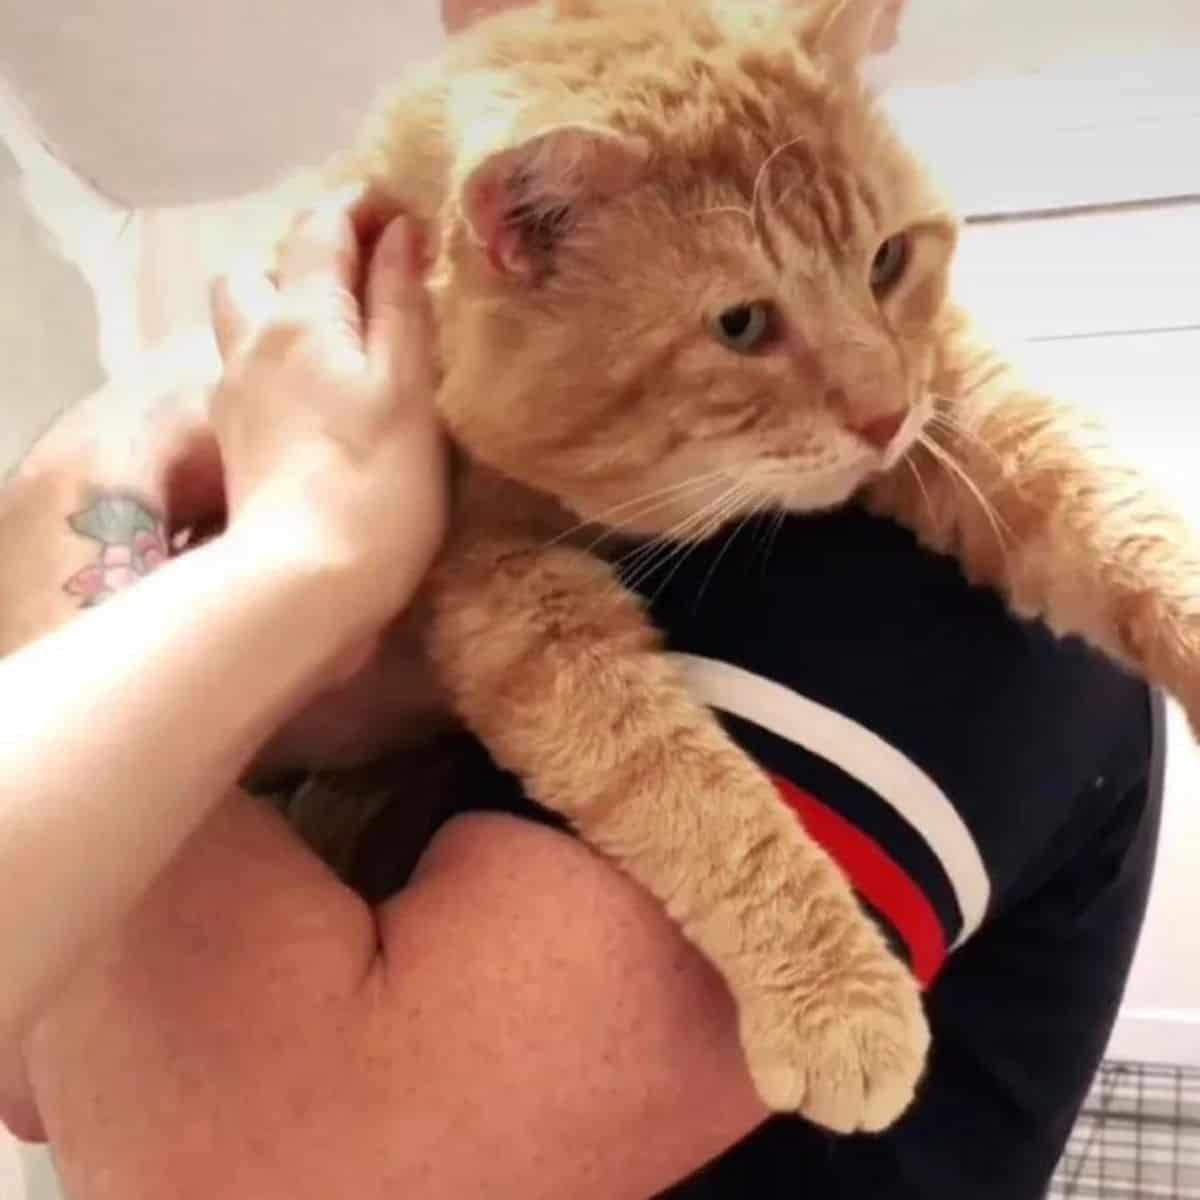 Big orange cat